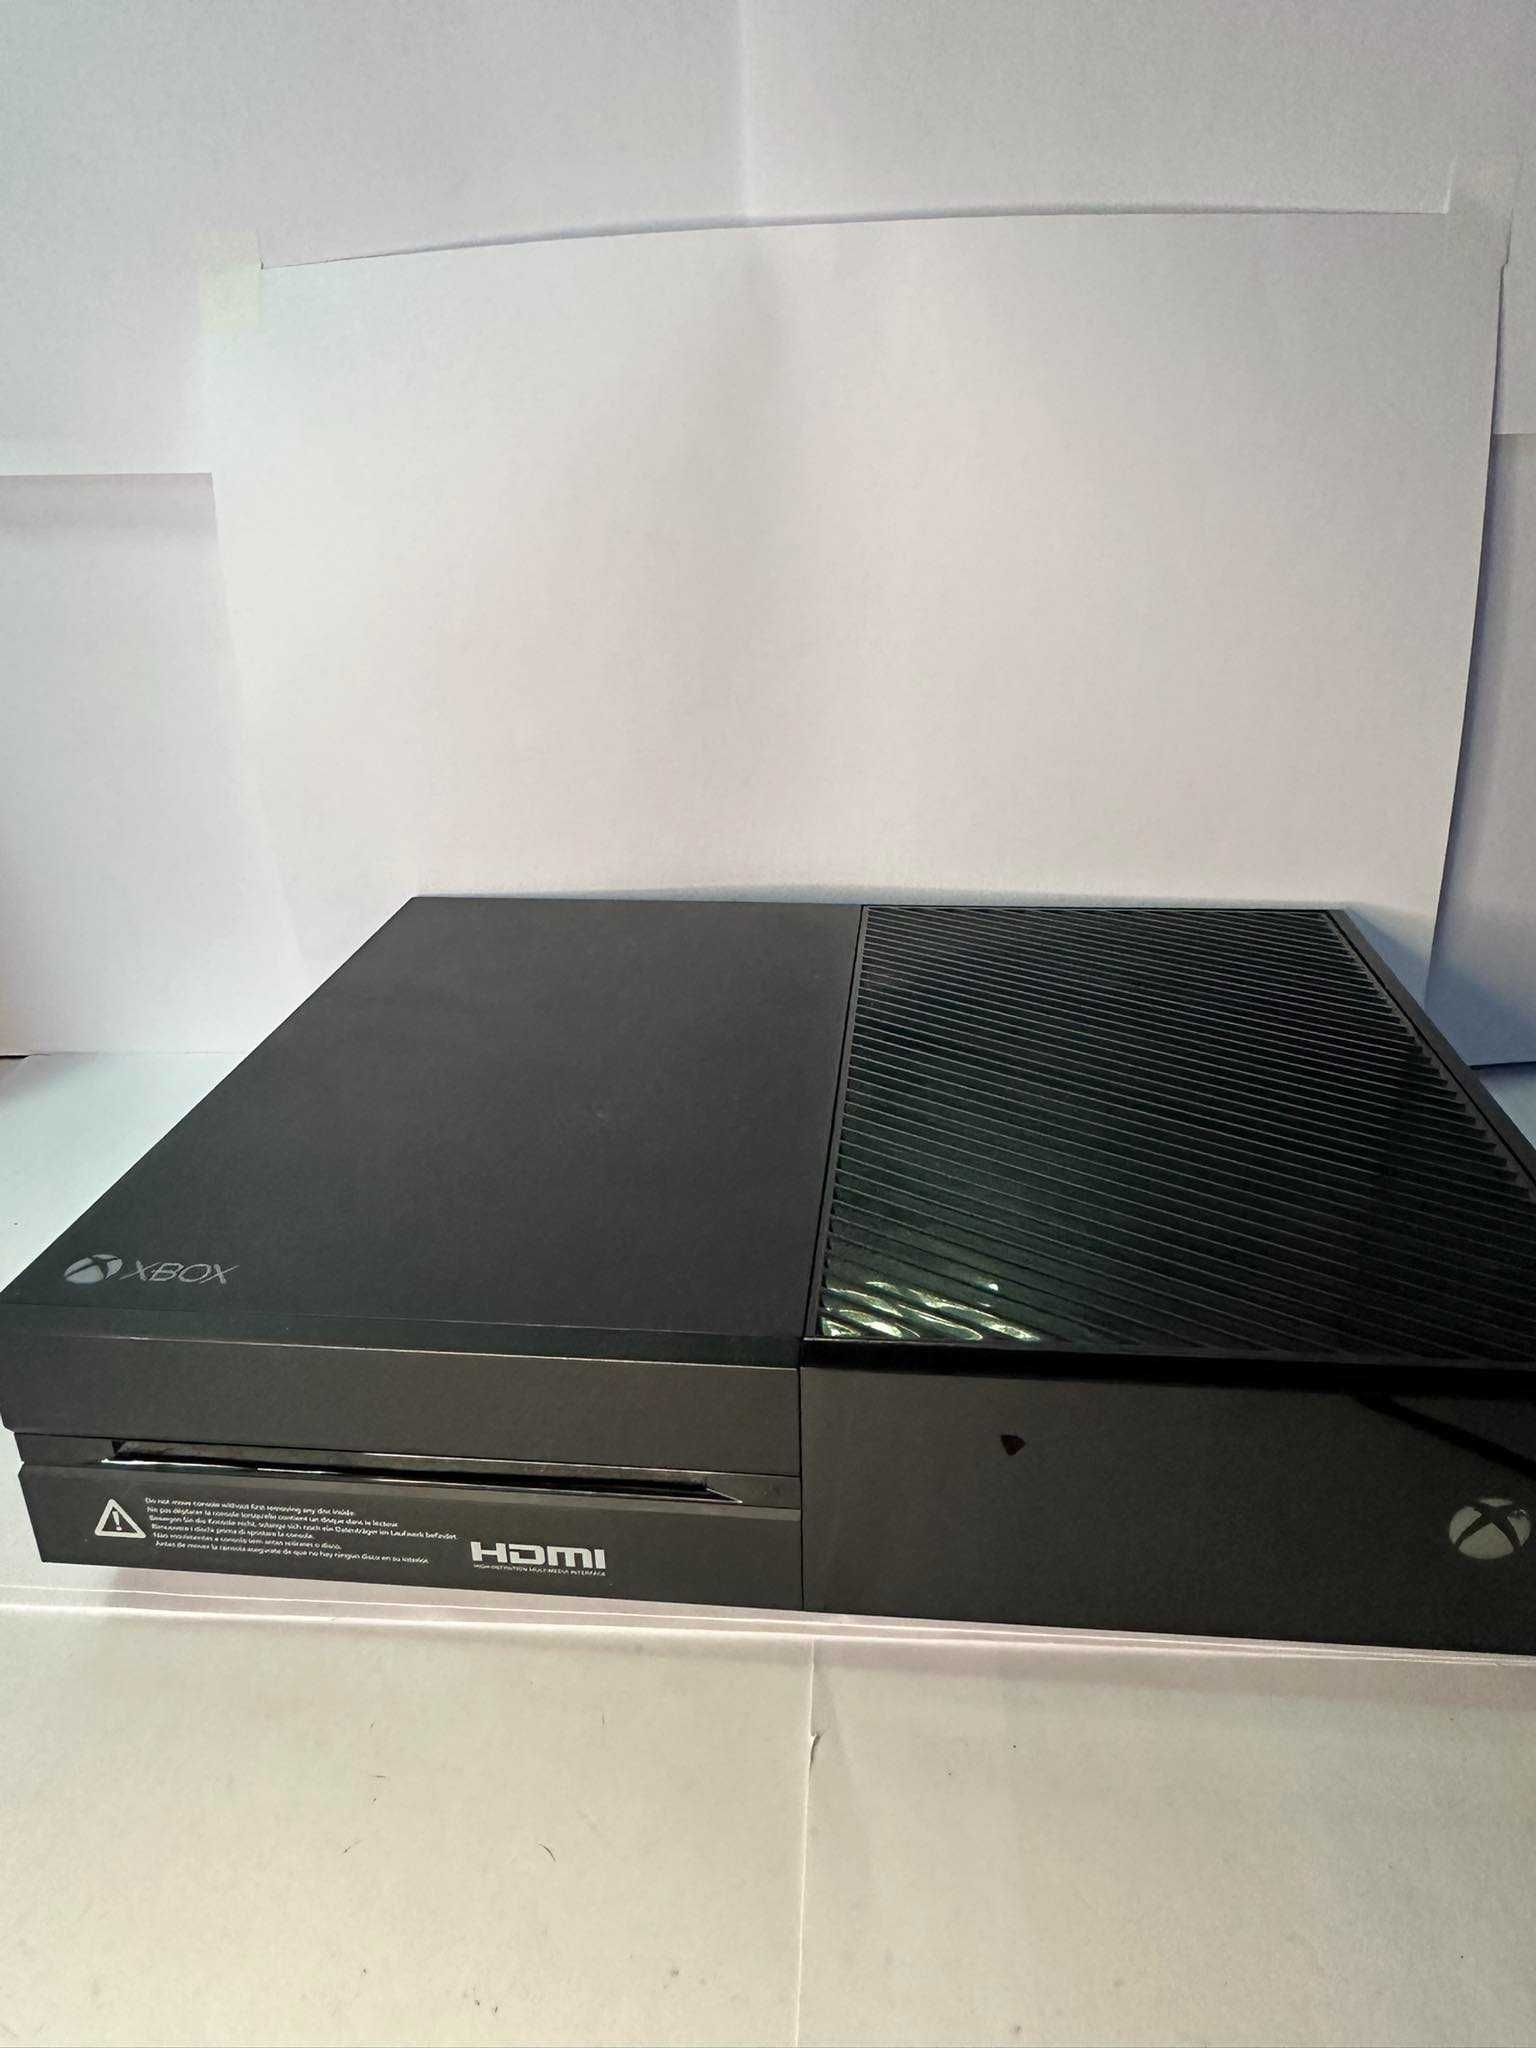 Konsola Xbox One 1 TB  (840/24) tyl